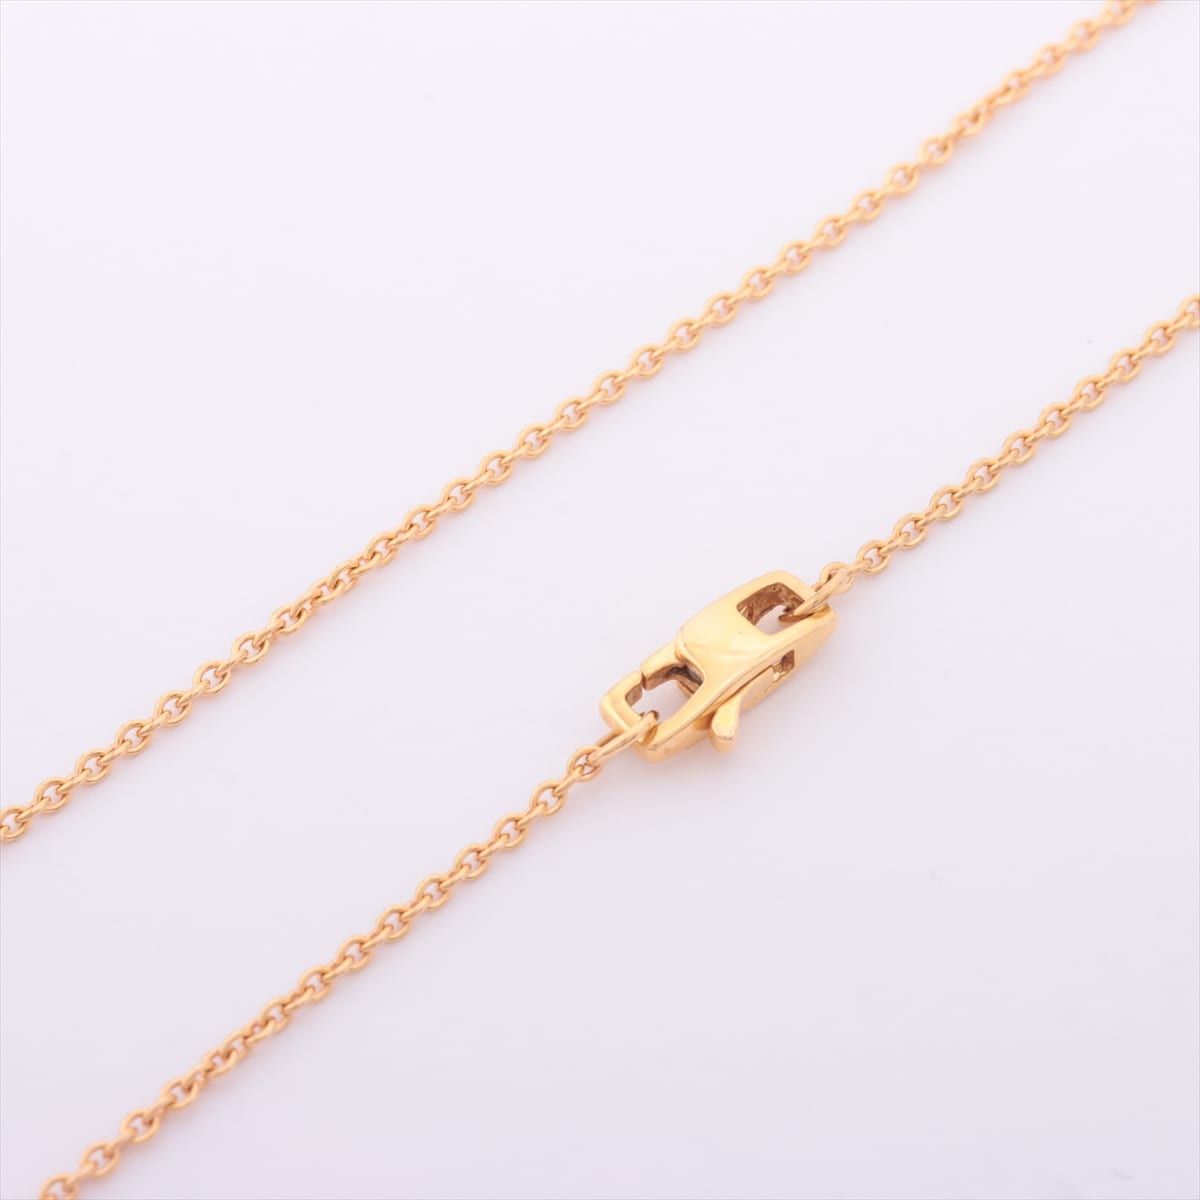 Louis Vuitton Pandantif Empreinte diamond Necklace 750(YG) 6.1g